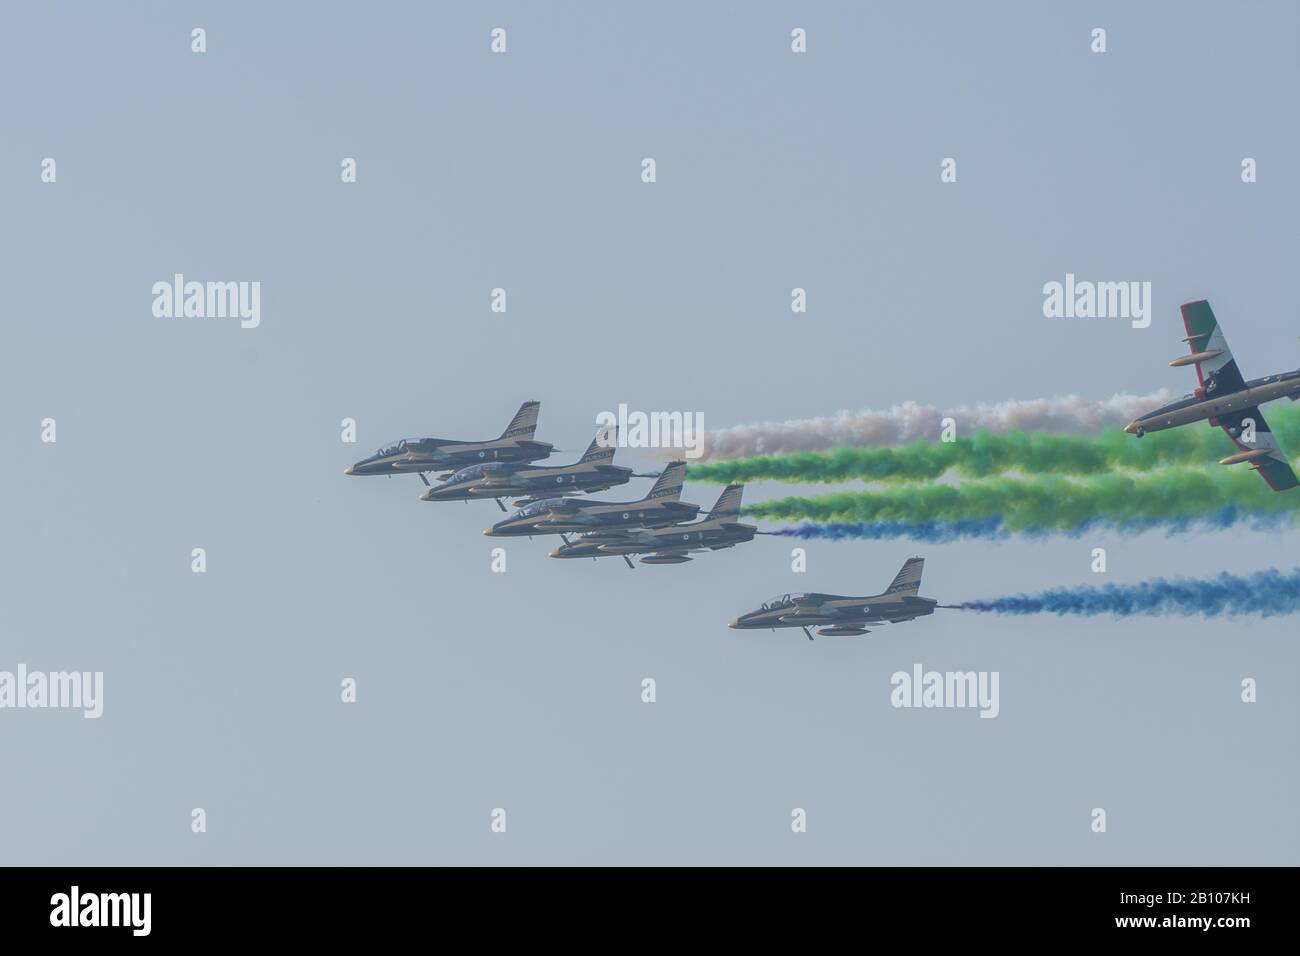 Exposition De la Plus Grande forteresse de l'Union militaire des Émirats arabes Unis à Umm al Quwain avec avions militaires coordonnés montrant les couleurs du drapeau des Émirats arabes Unis sur le ciel bleu vif Banque D'Images